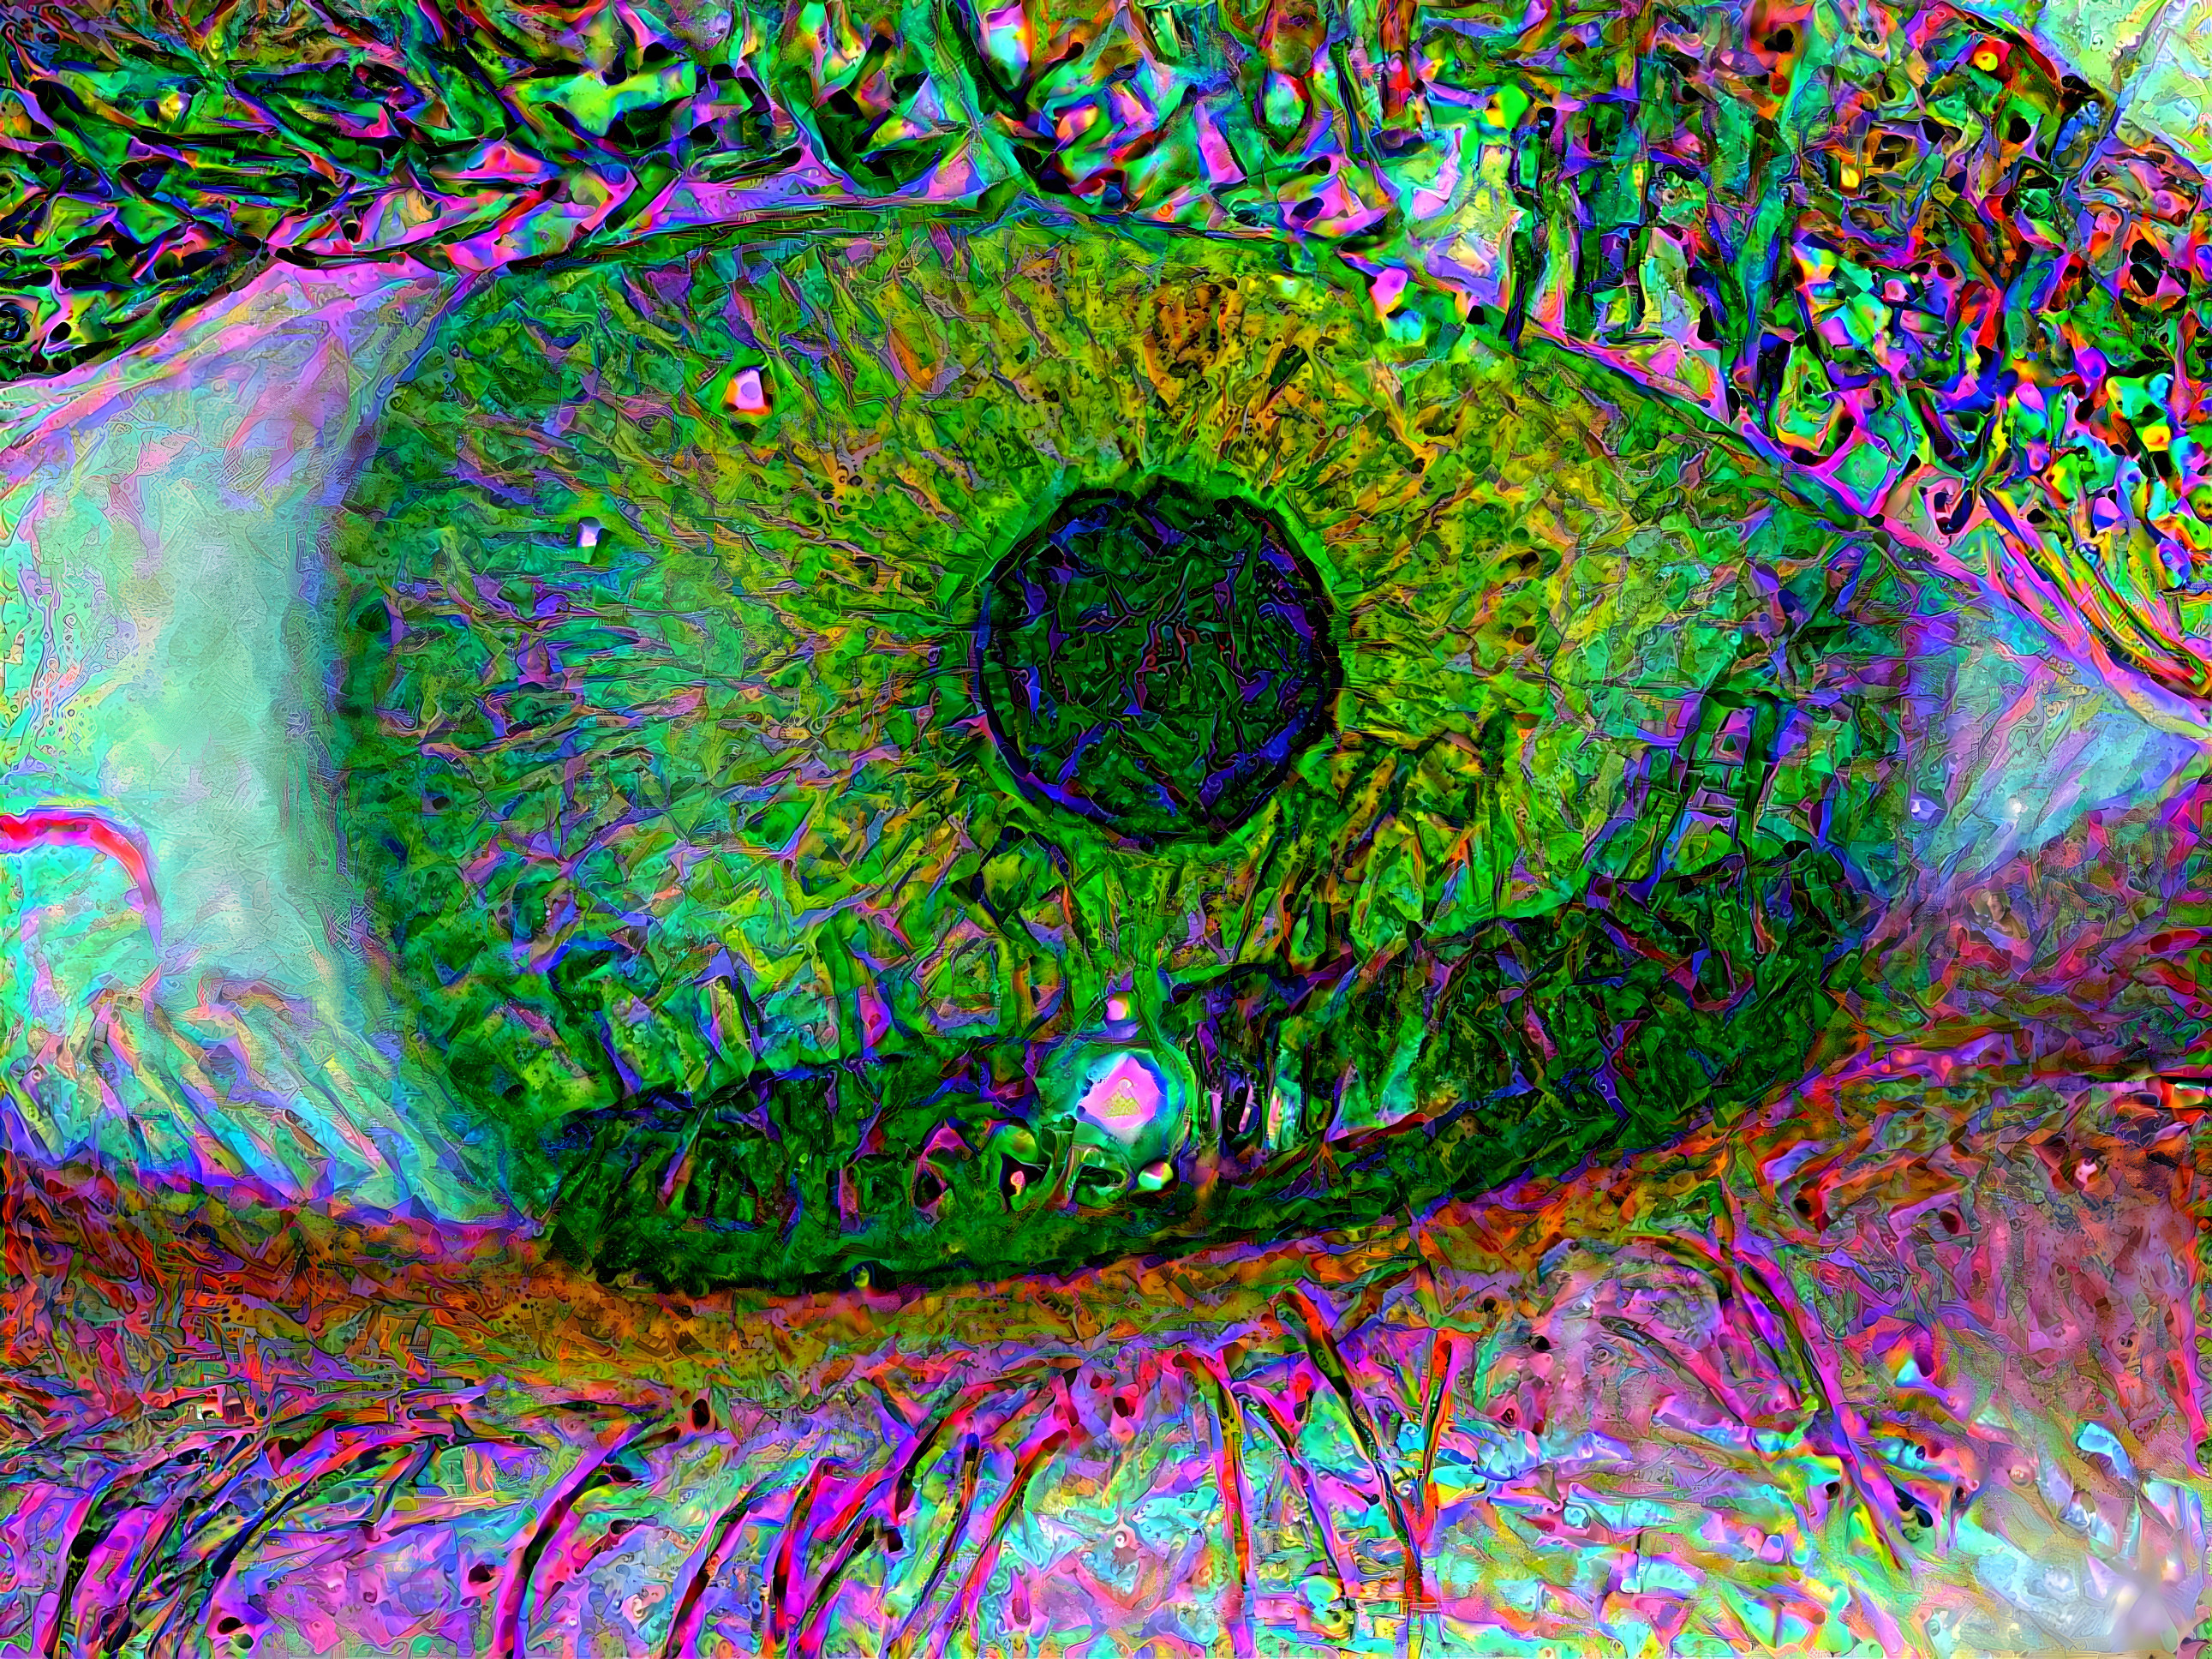 Eyed